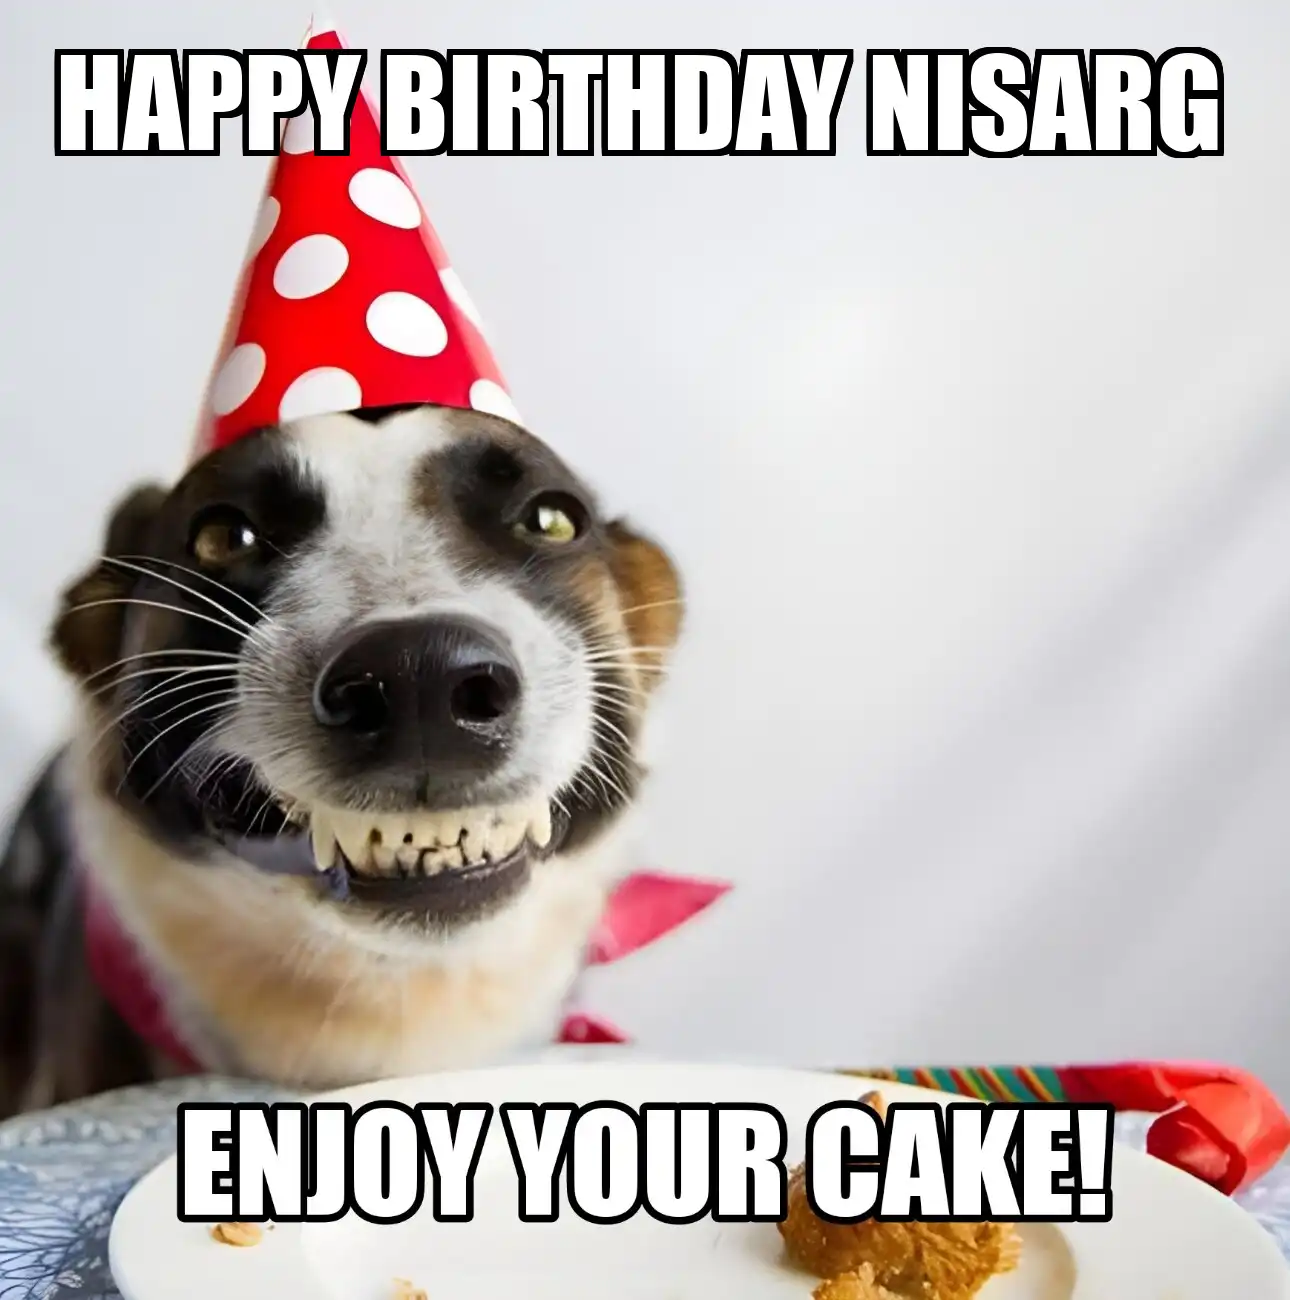 Happy Birthday Nisarg Enjoy Your Cake Dog Meme